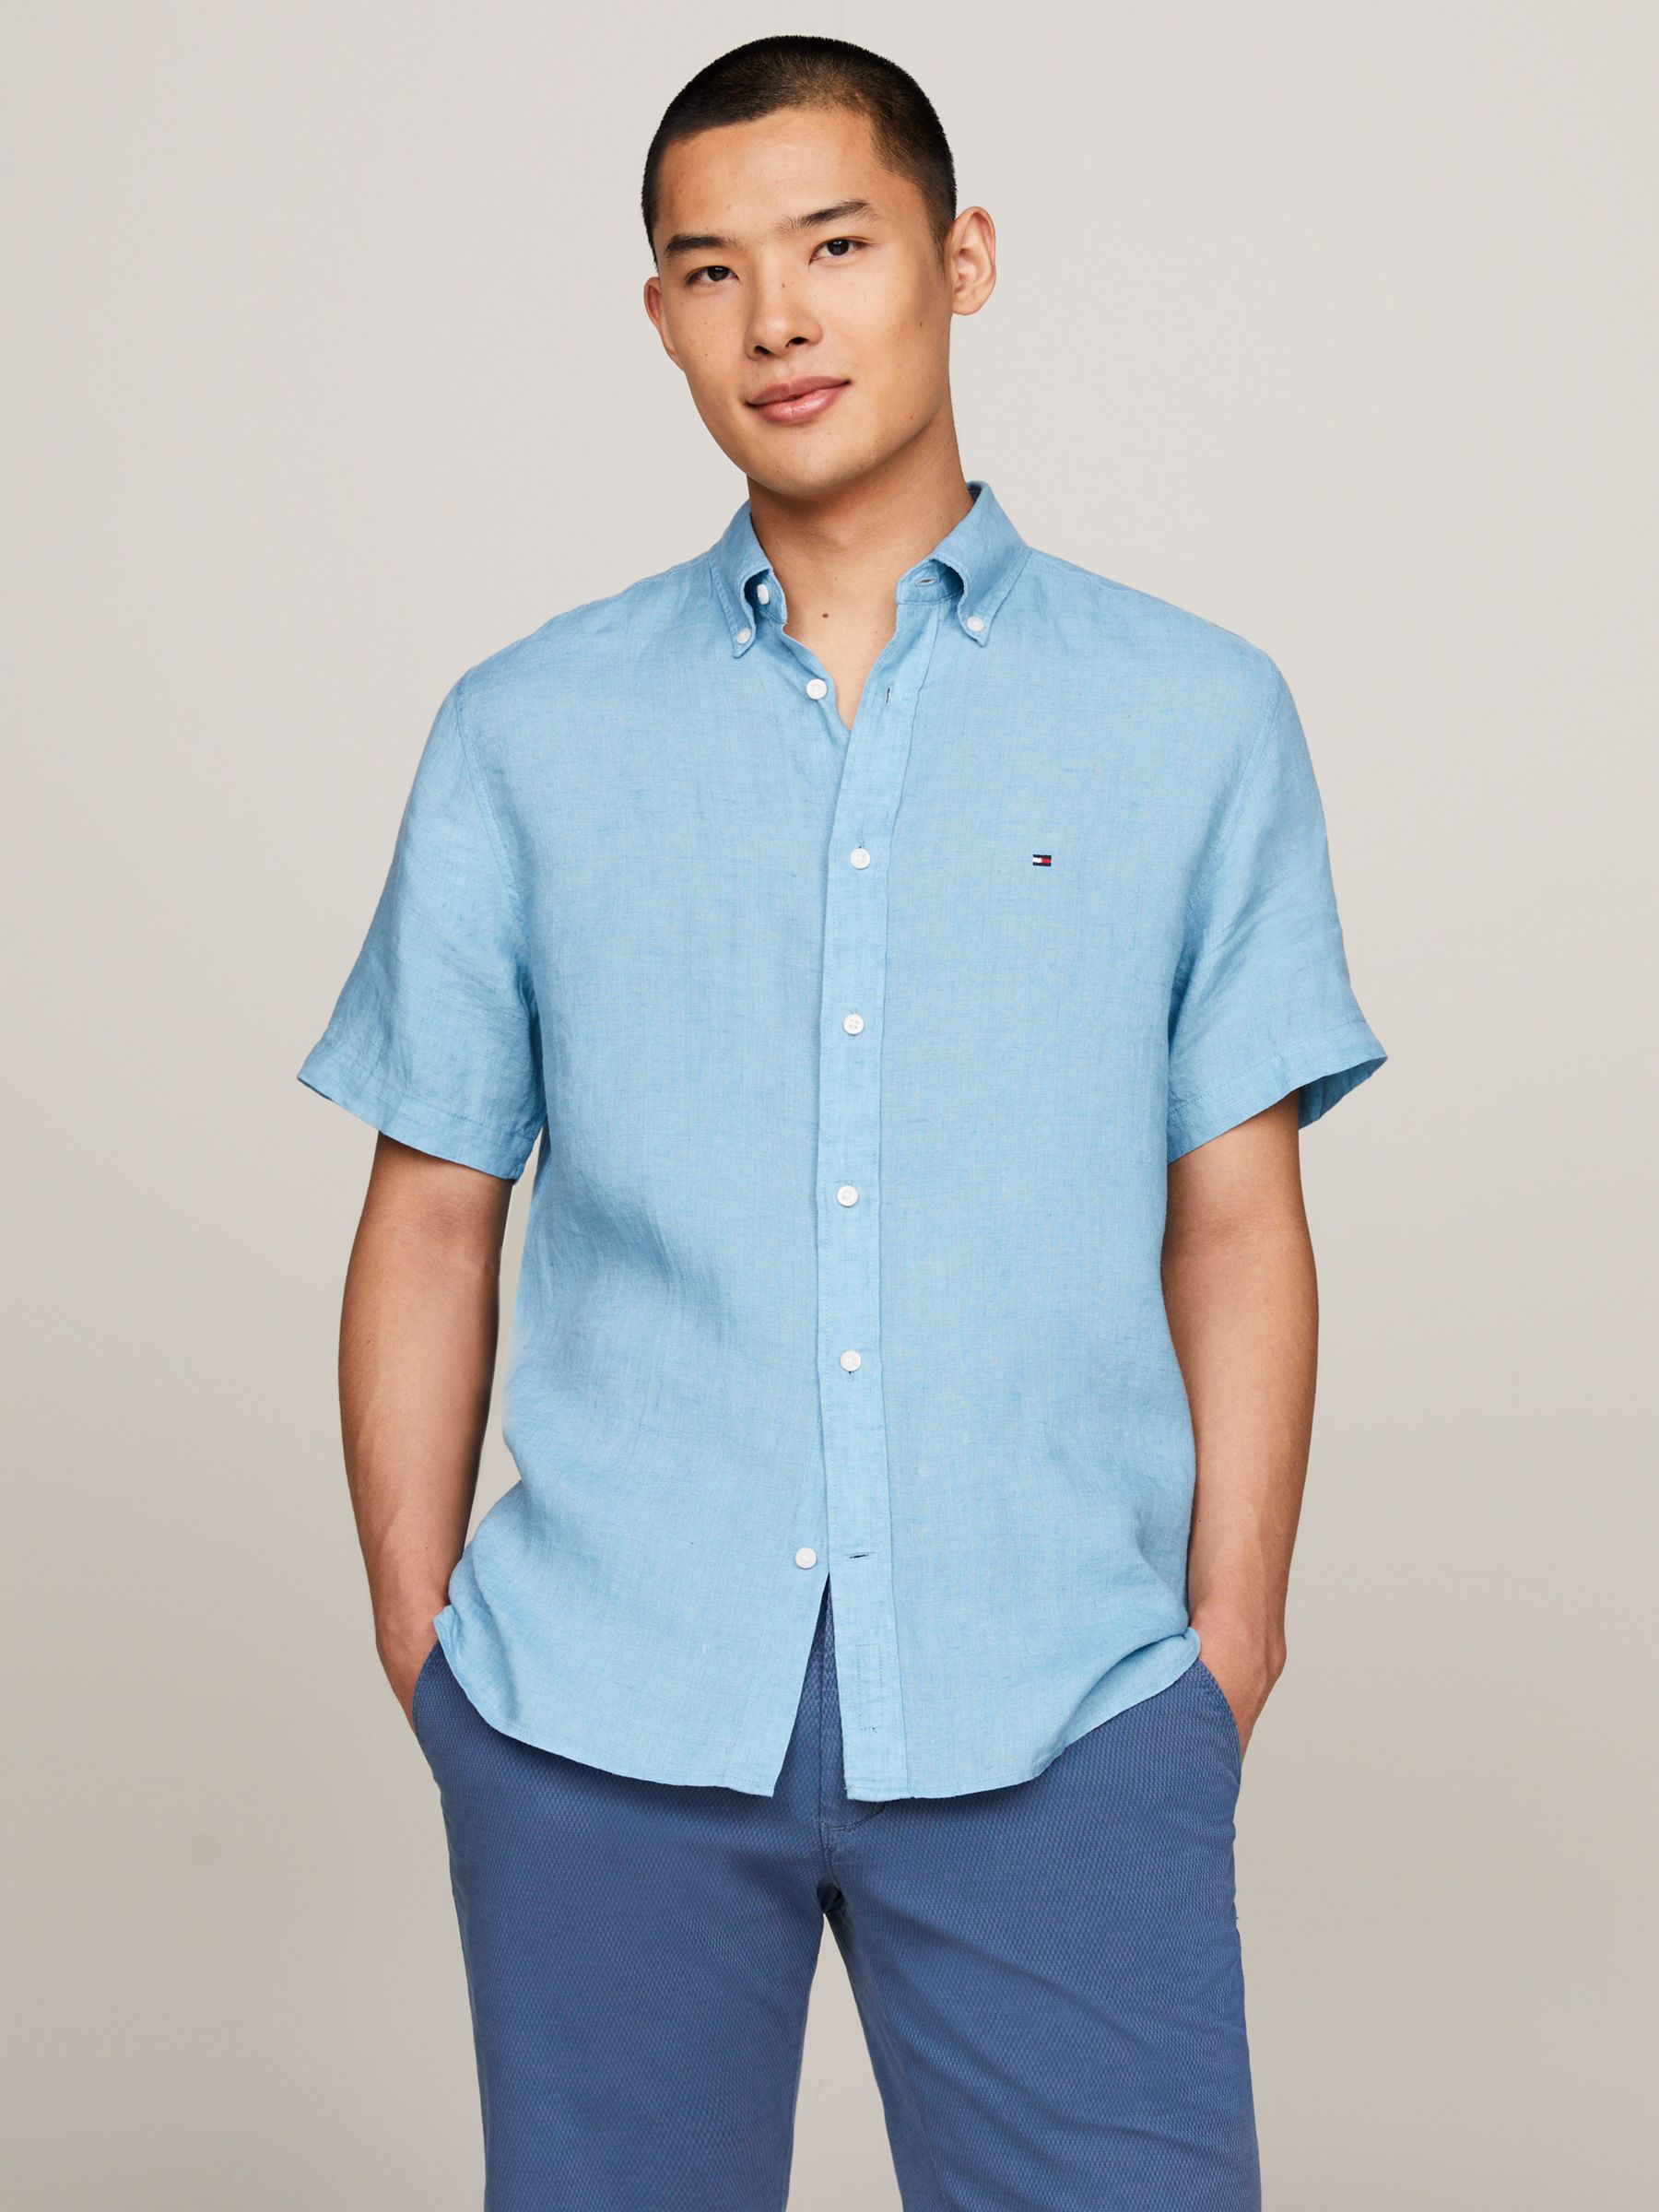 Tommy Hilfiger Pigment Dyed Linen Short Sleeve Shirt, Sleepy Blue, XXXL